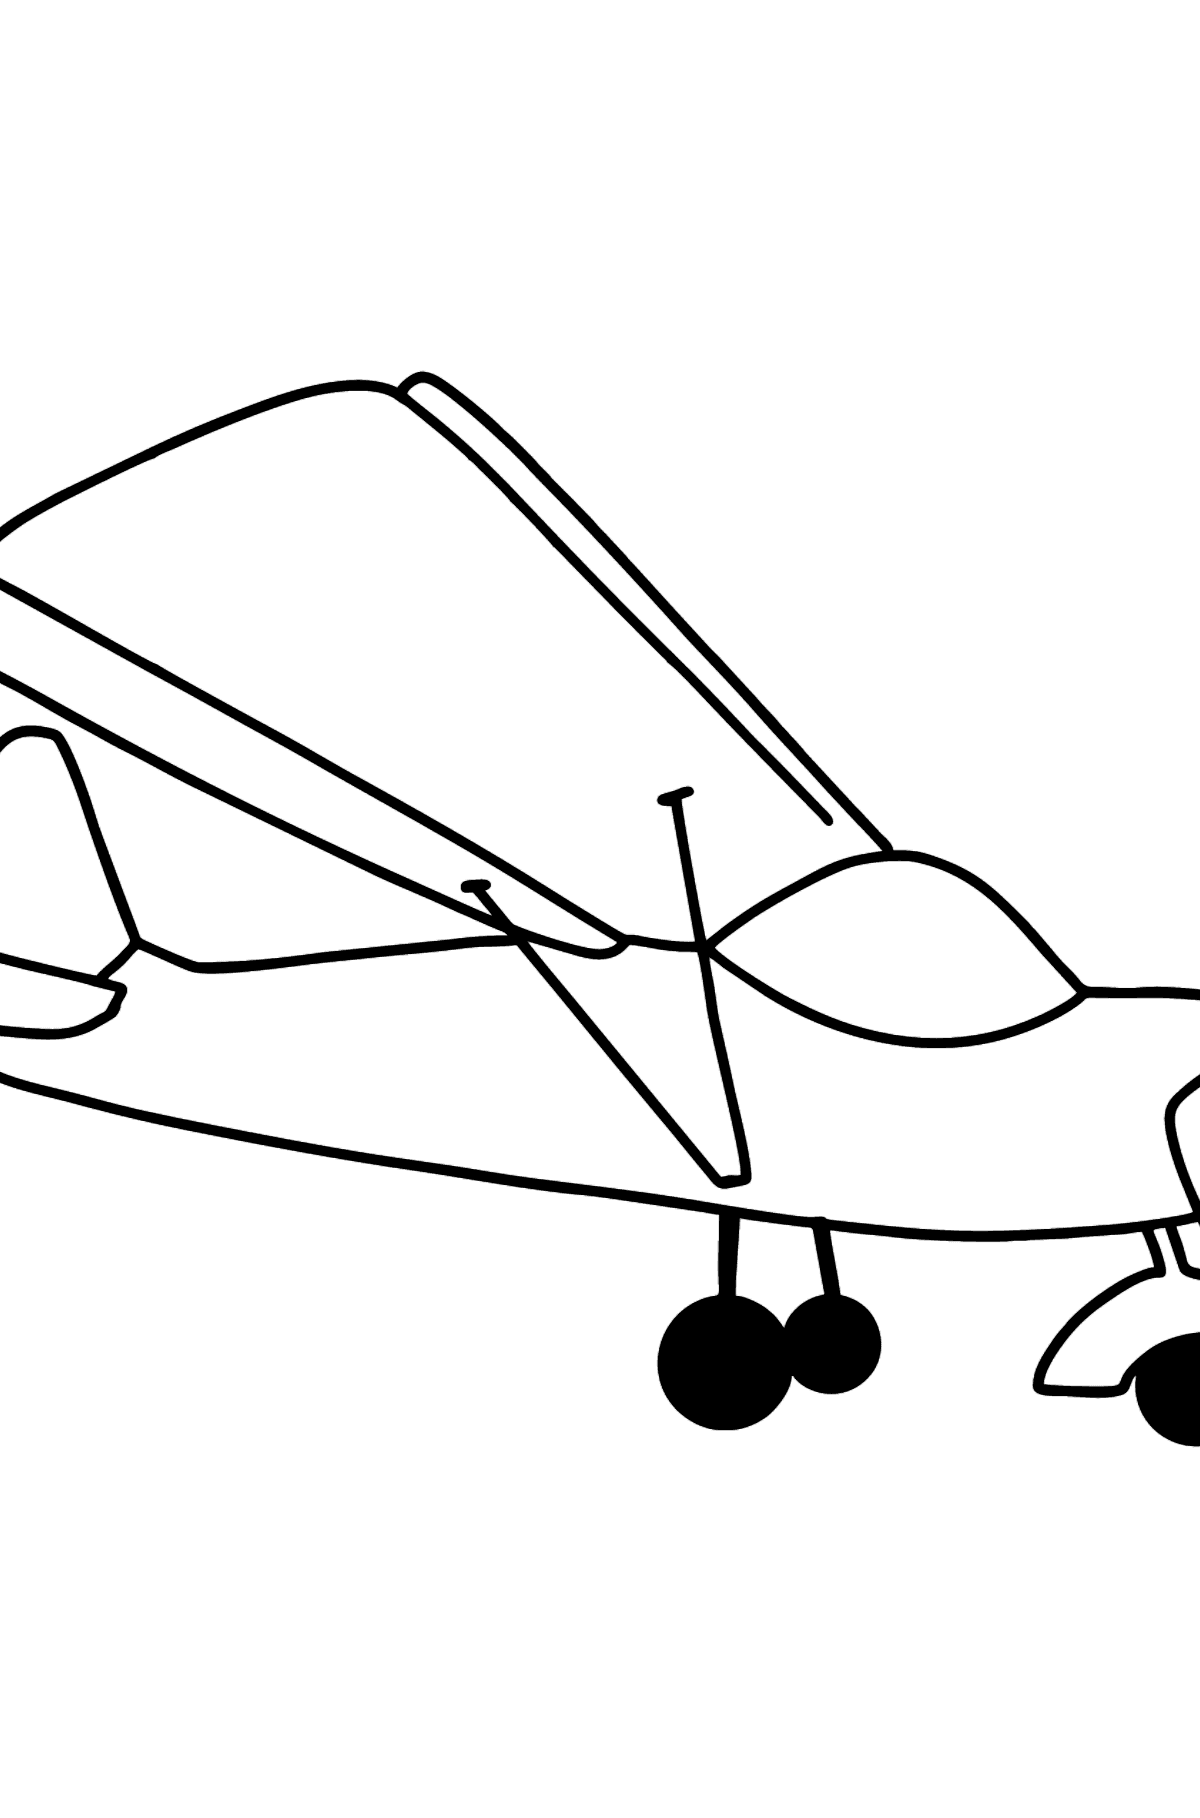 Tegning til farvning lille fly - Tegninger til farvelægning for børn